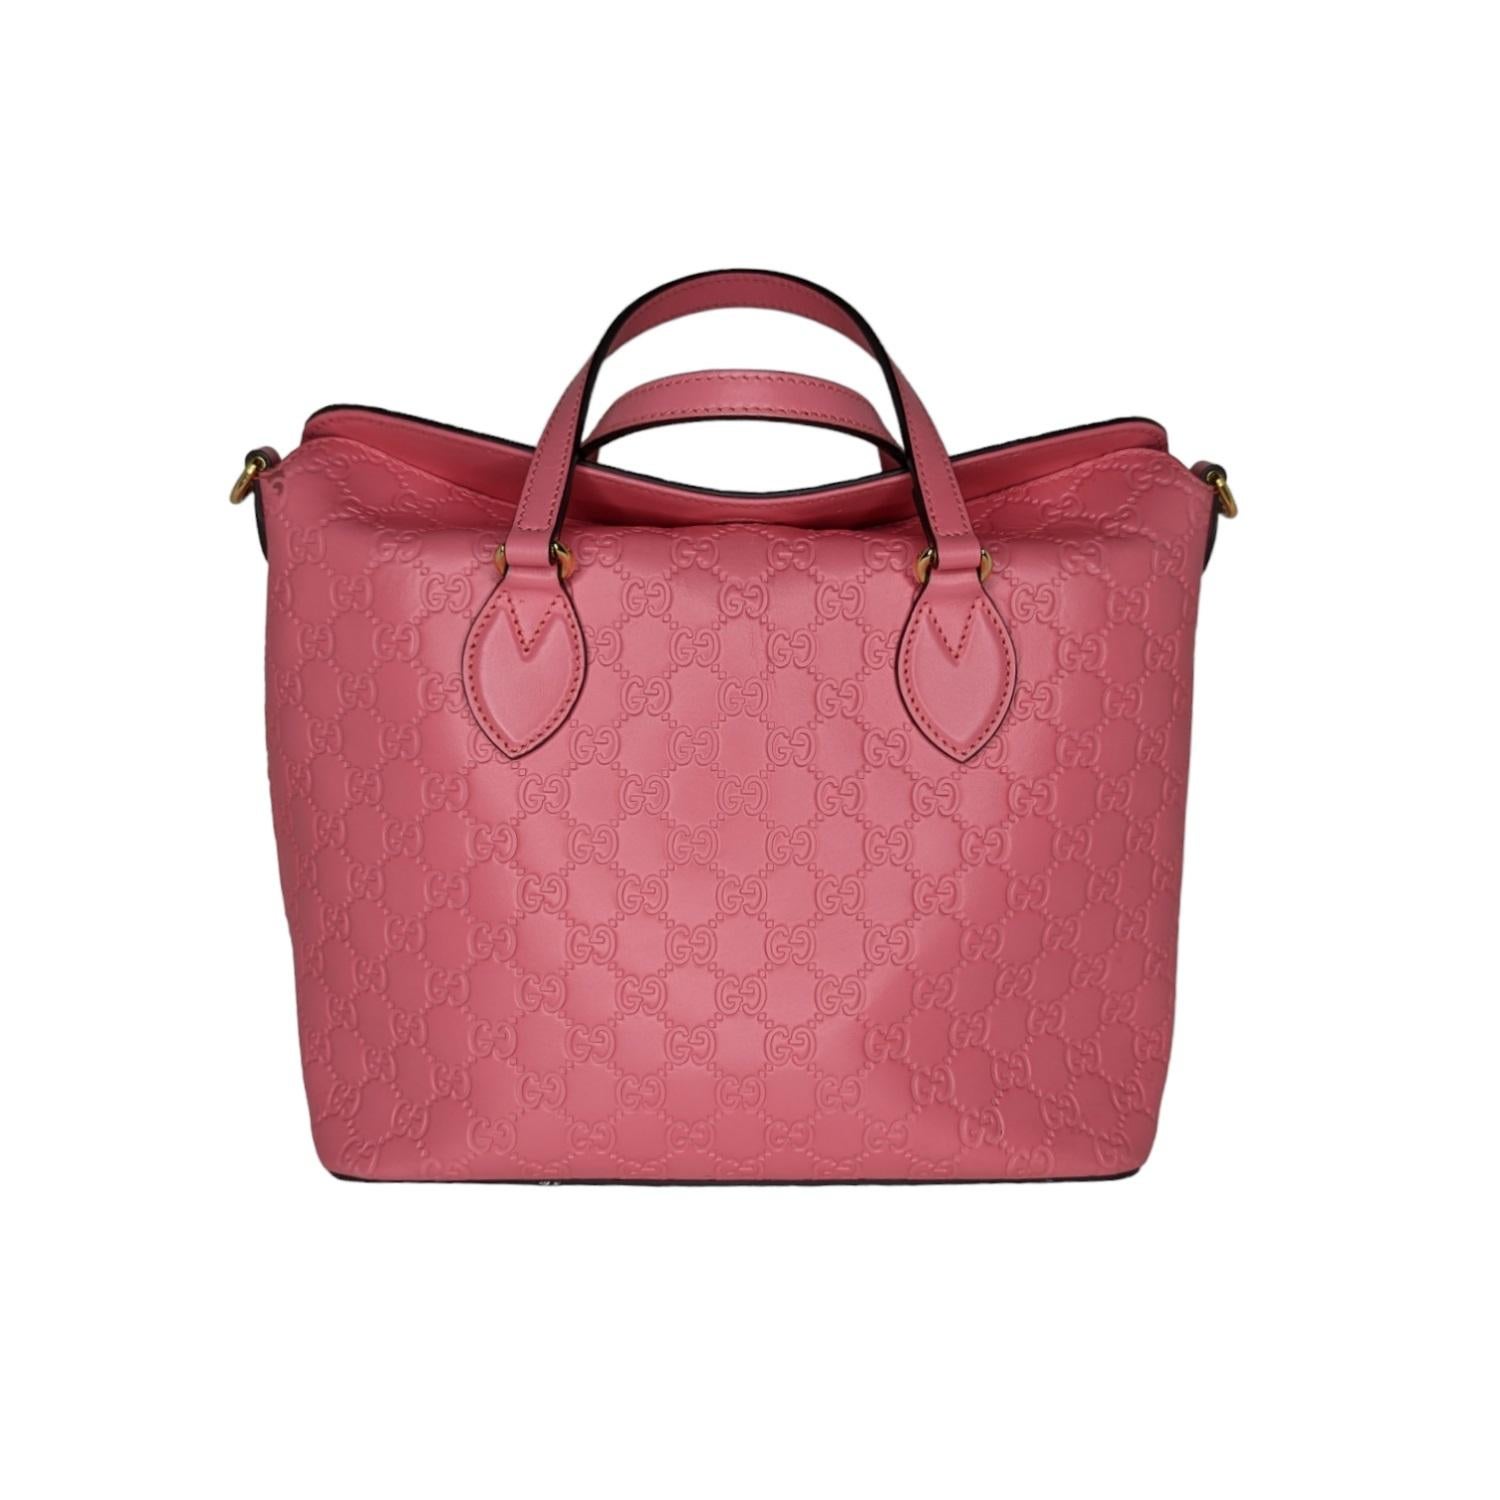 Diese elegante Tasche ist aus feinstem, mit Monogrammen geprägtem Guccissima-Leder in Pink gefertigt. Die Tasche verfügt über dünne und robuste Lederriemen als obere Griffe und einen optionalen, verstellbaren Schulterriemen mit polierten